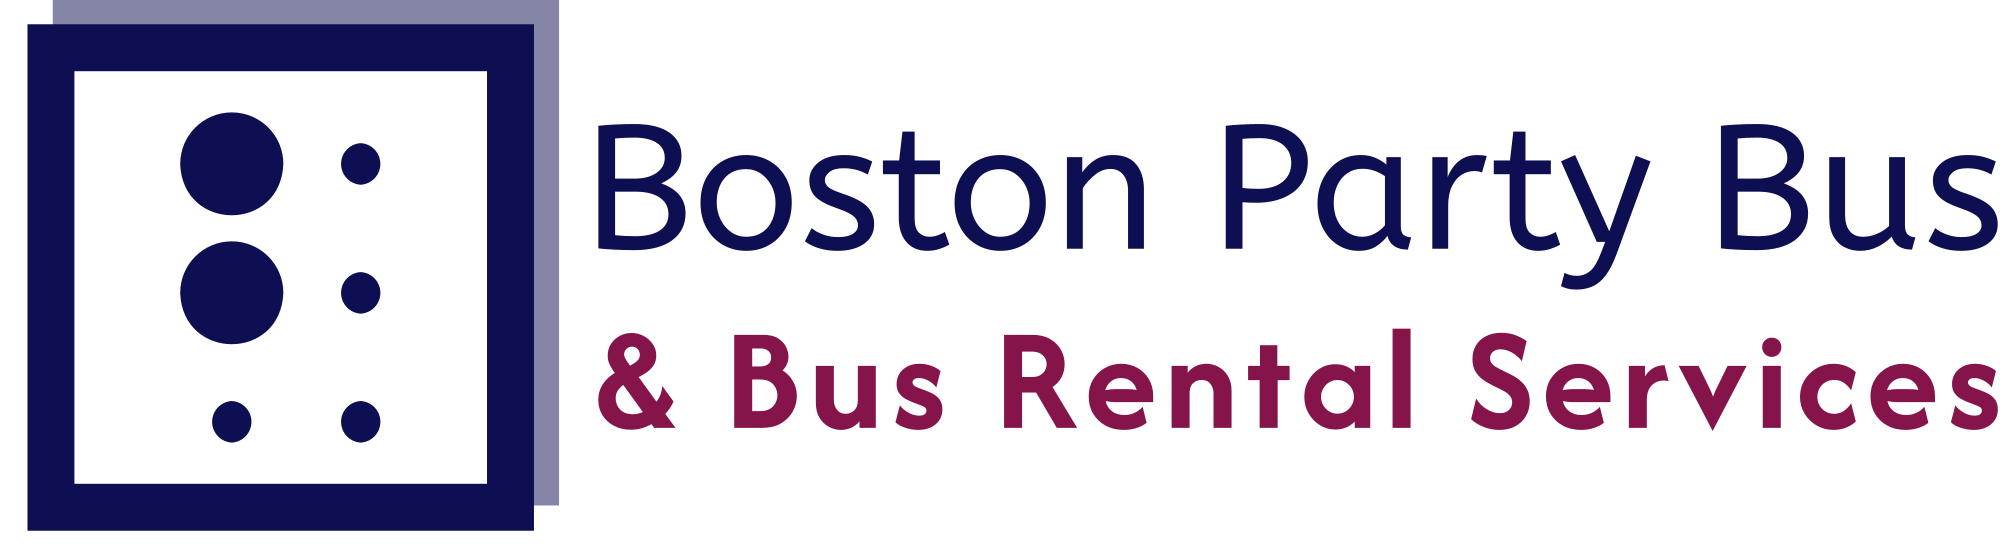 Boston Party Bus Company logo